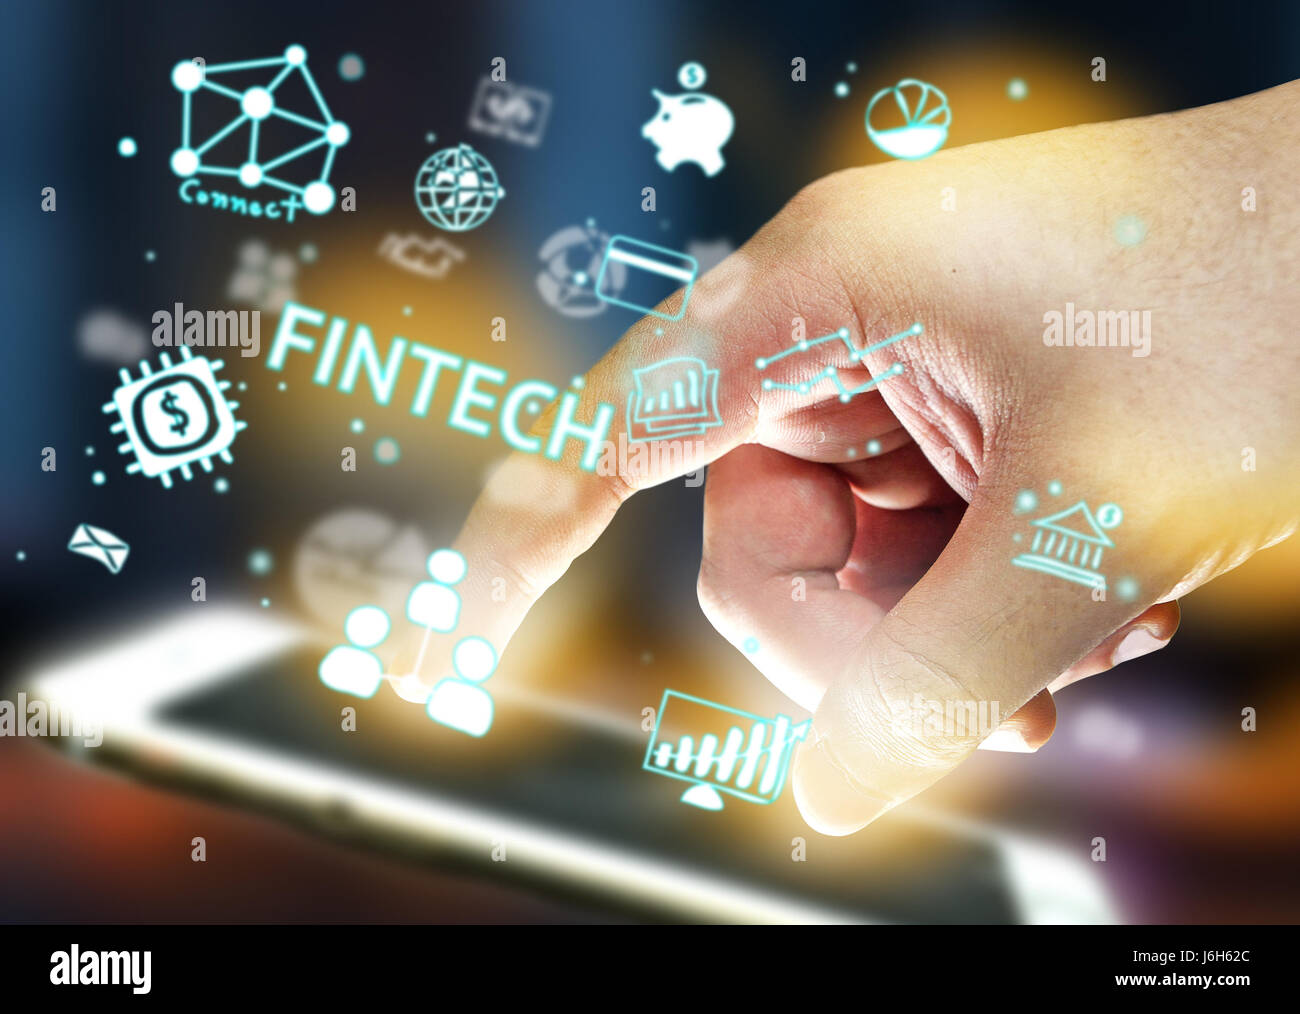 La technologie de l'Internet financier Investissement Fintech Concept. Doigt , Smartphone , Icône et abstract background Banque D'Images